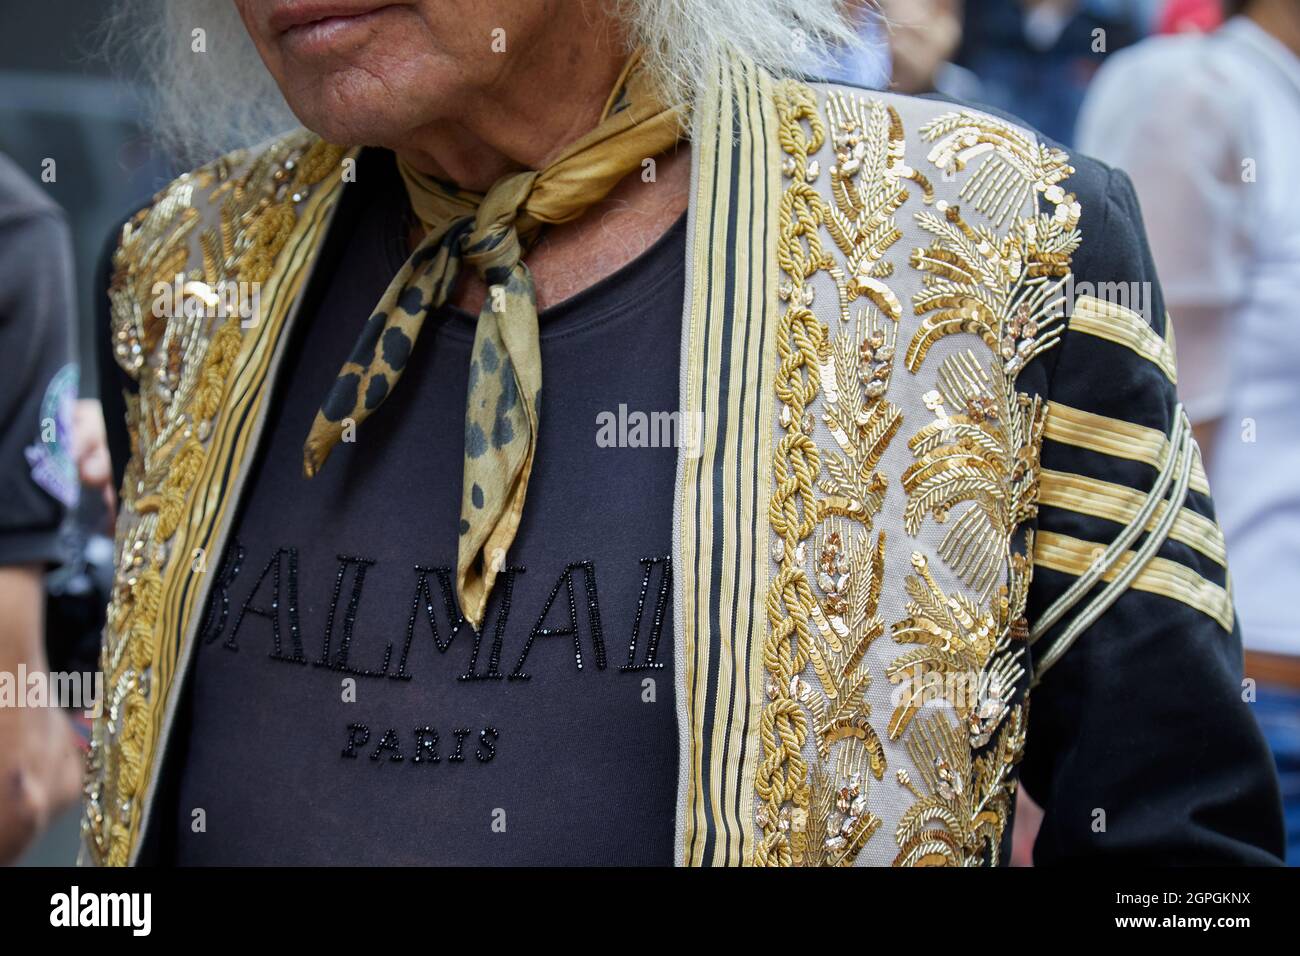 MILÁN, ITALIA - 25 DE SEPTIEMBRE de 2021: Hombre con chaqueta dorada y  negra con lentejuelas y camisa Balmain negra antes del espectáculo de moda  Ermanno Scivino, Milan Fa Fotografía de stock - Alamy